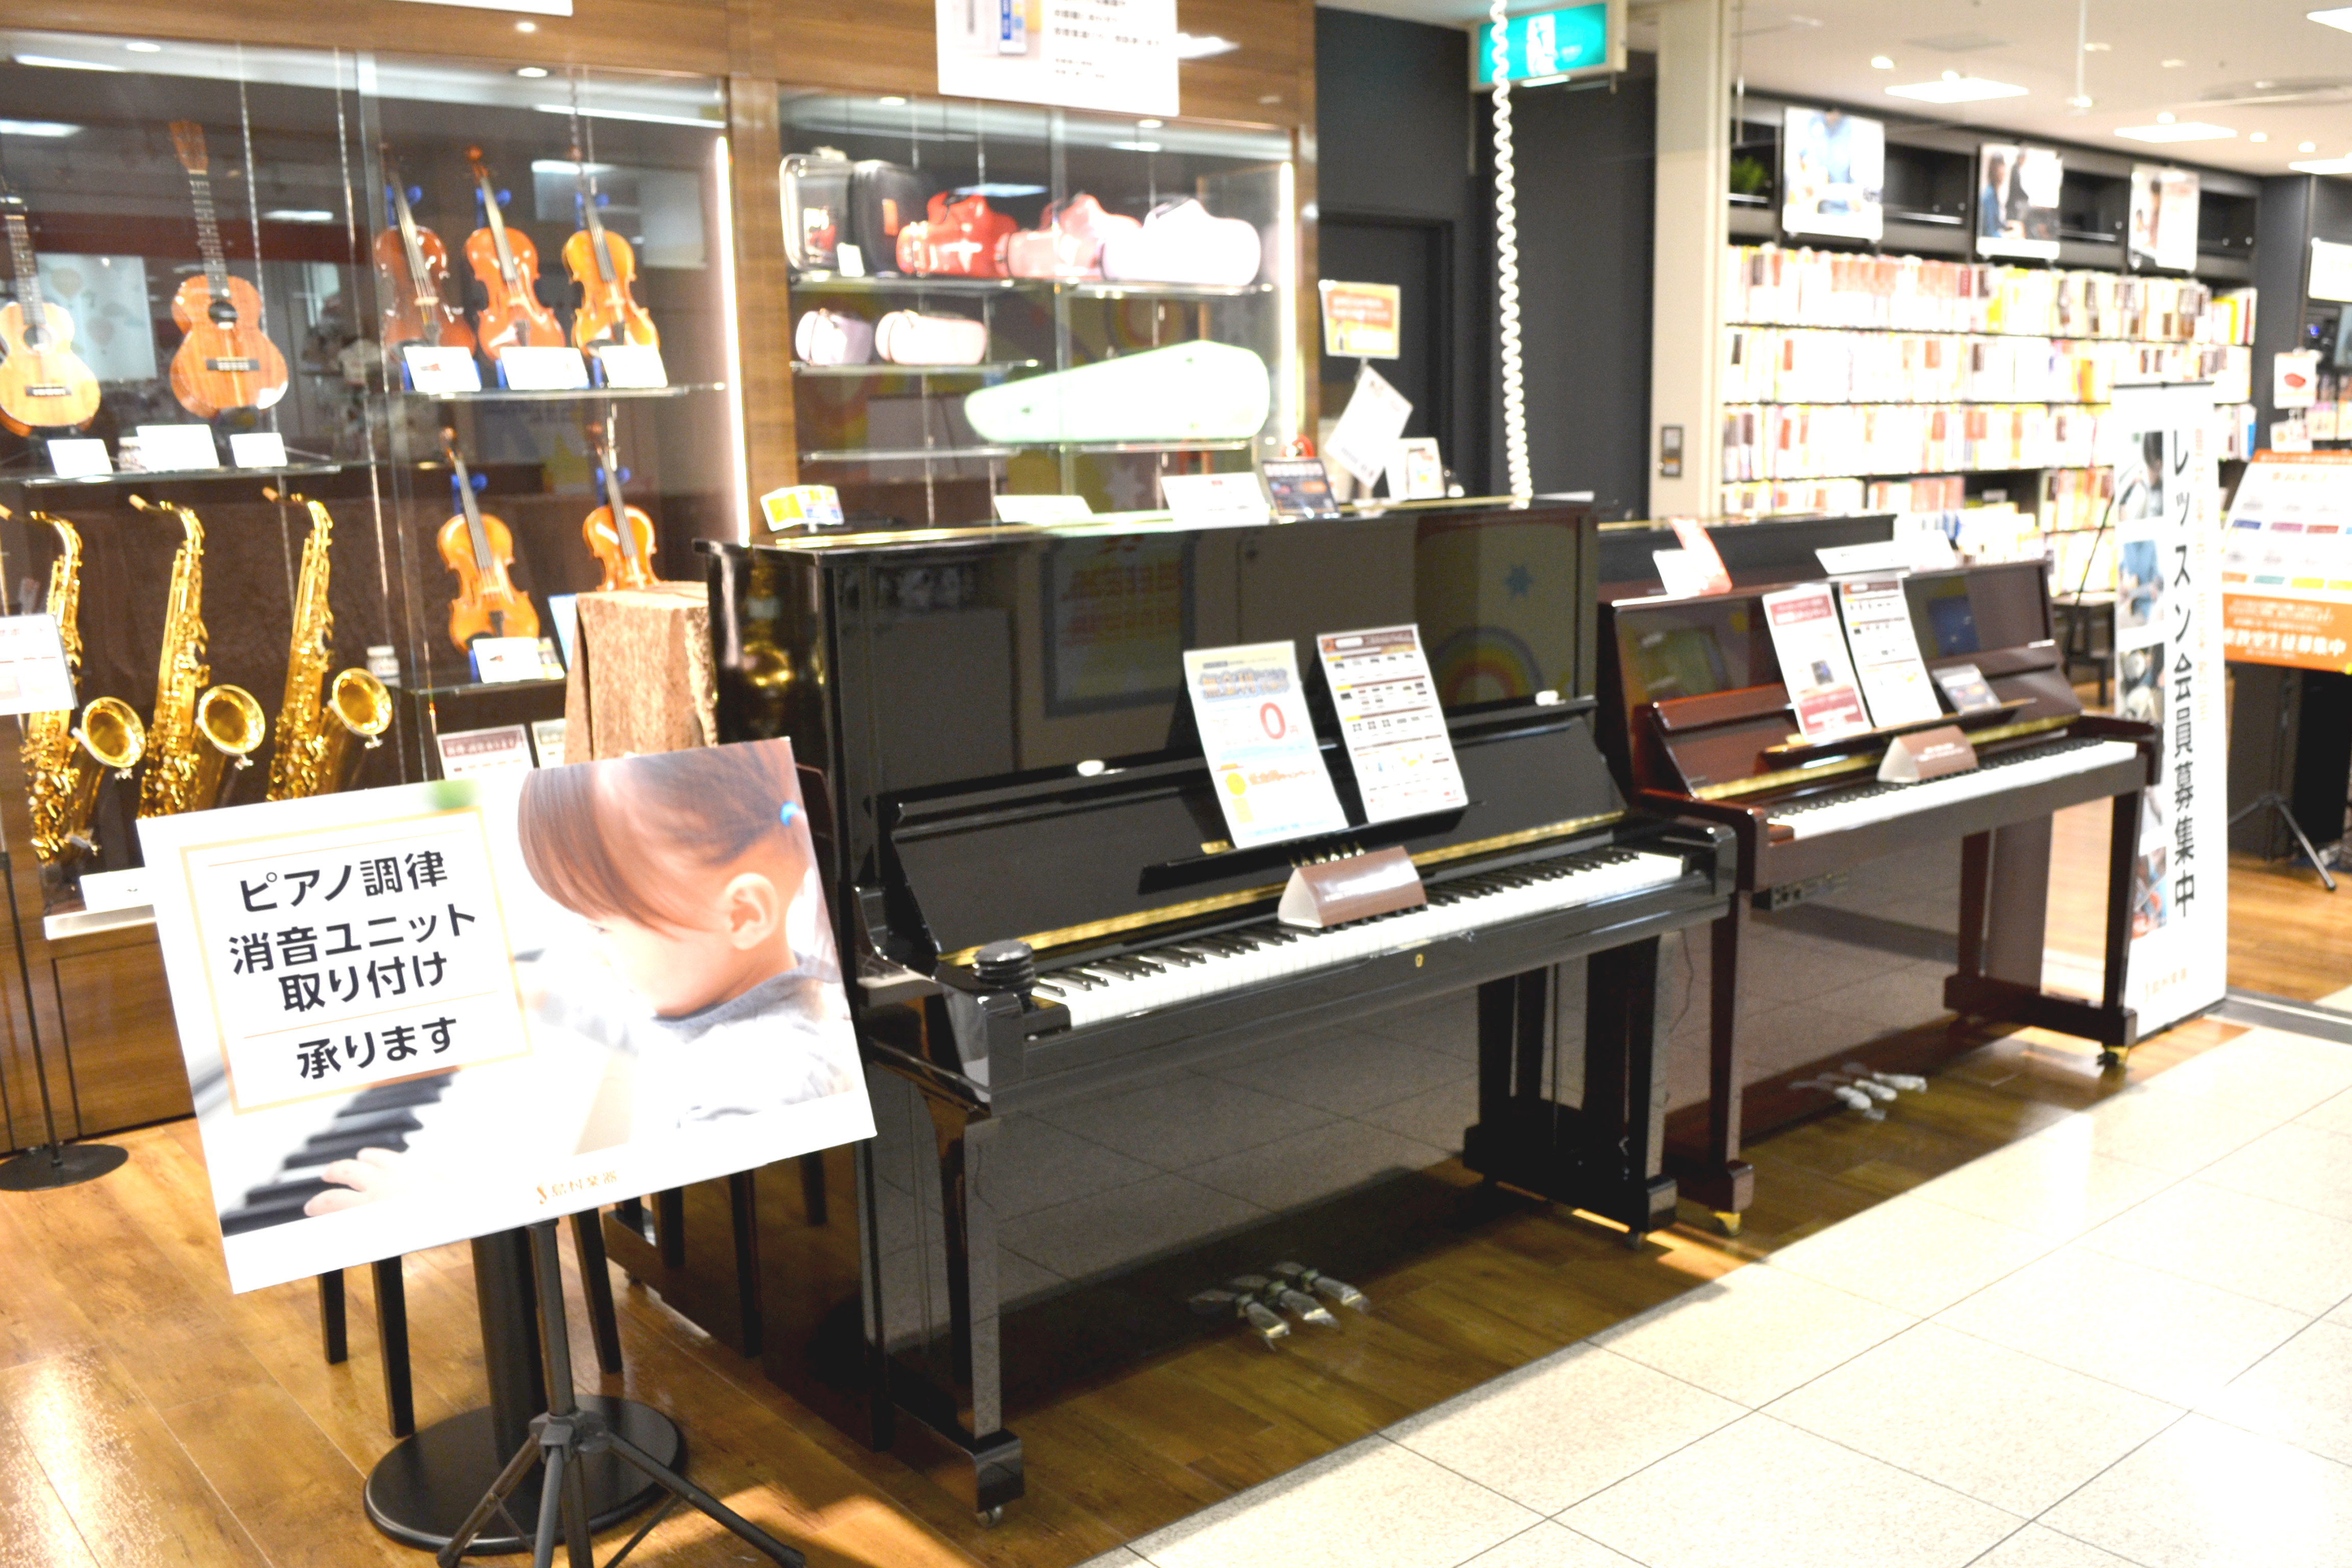 *ピアノのことならなんでもご相談ください 島村楽器FKD宇都宮店では、電子ピアノ・アコースティックピアノ合わせて約30台以上展示しております。 ピアノ選びの経験を重ねたスタッフがお一人一人に合わせた素敵なピアノをご案内いたします。ご相談やお下見の方も、ぜひお気軽にご来店くださいませ。皆さまのご来店を […]